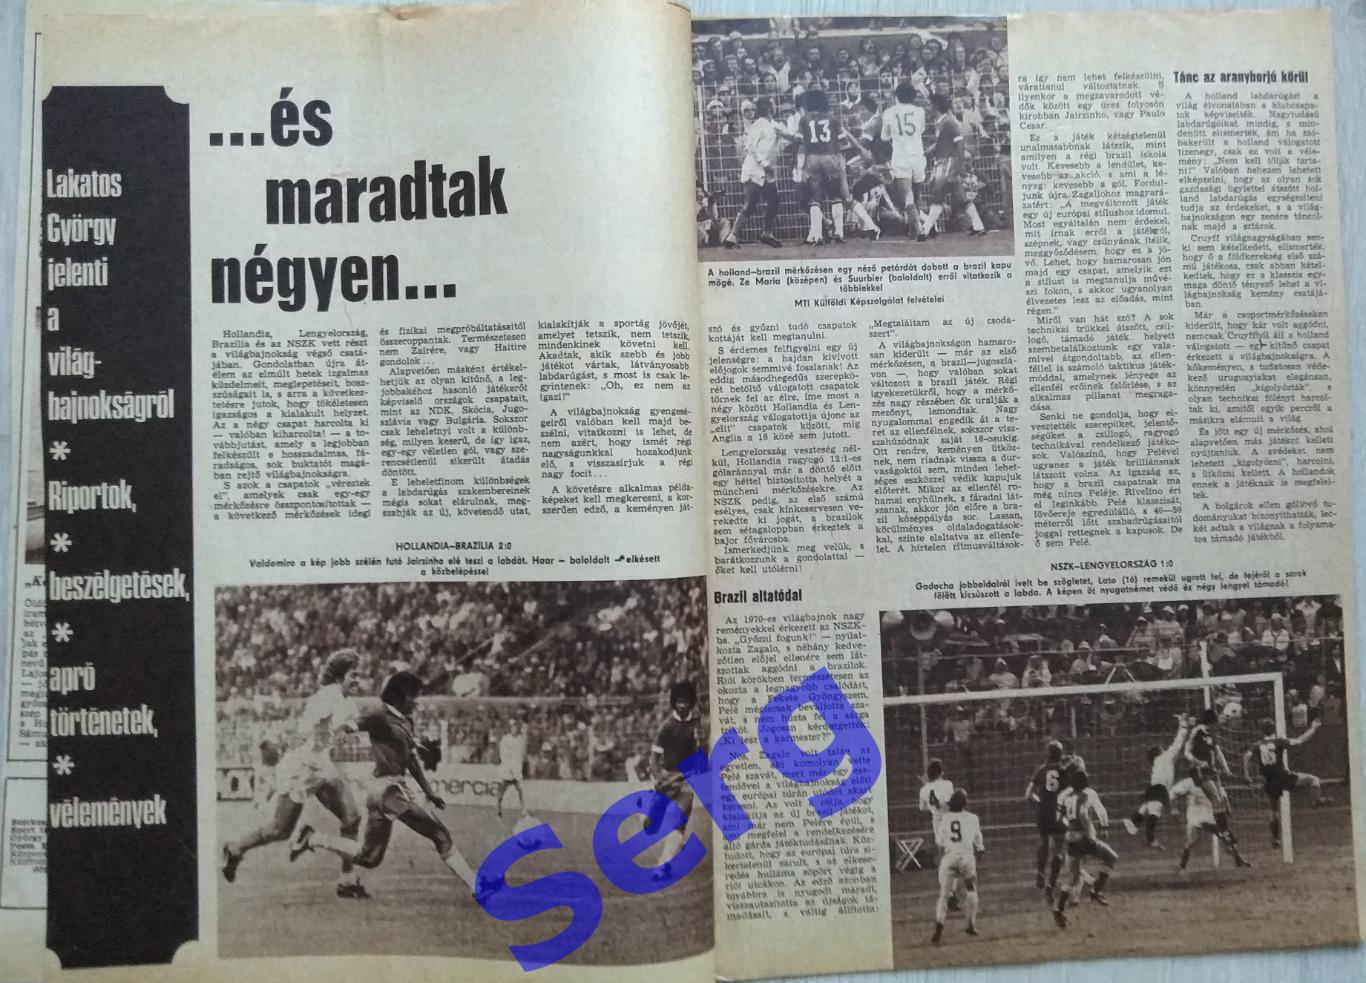 Фото из журнала Кепеш Спорт/Kepes sport 09.07.1974 год 1